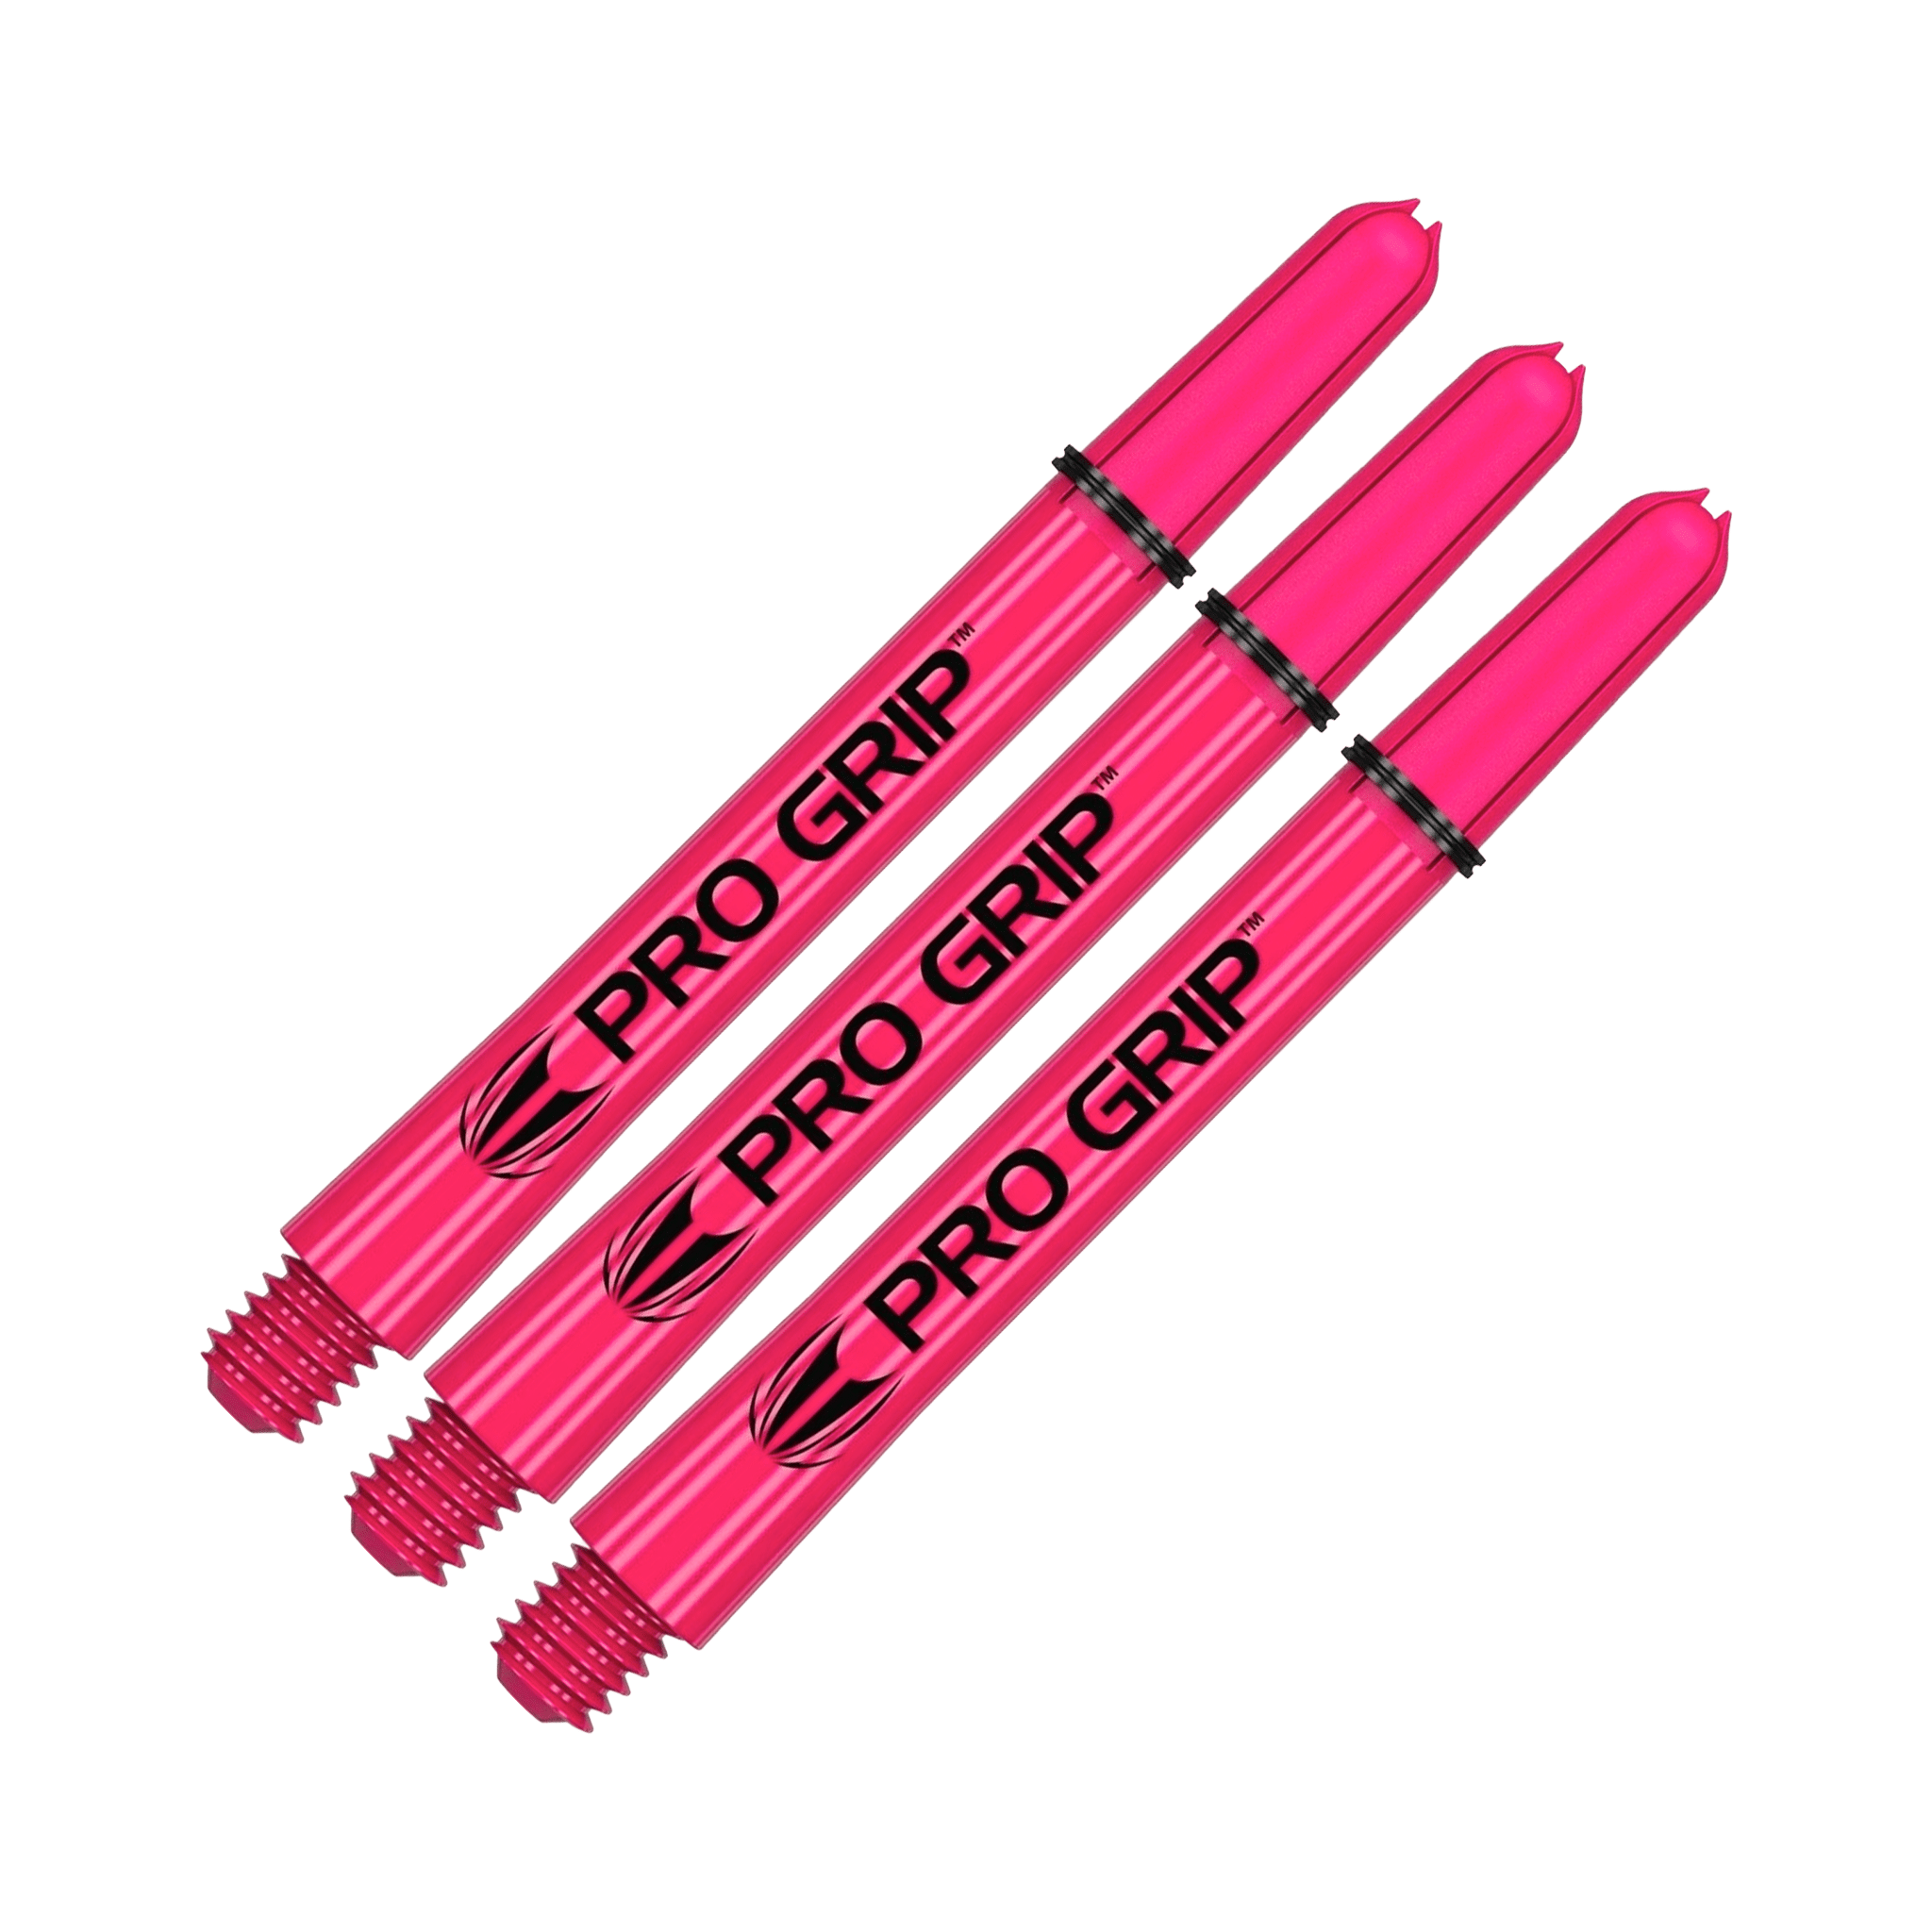 Target Pro Grip Multi Pack - Nylon Dart Shafts (3 Sets) Pink / Medium (48mm) Shafts